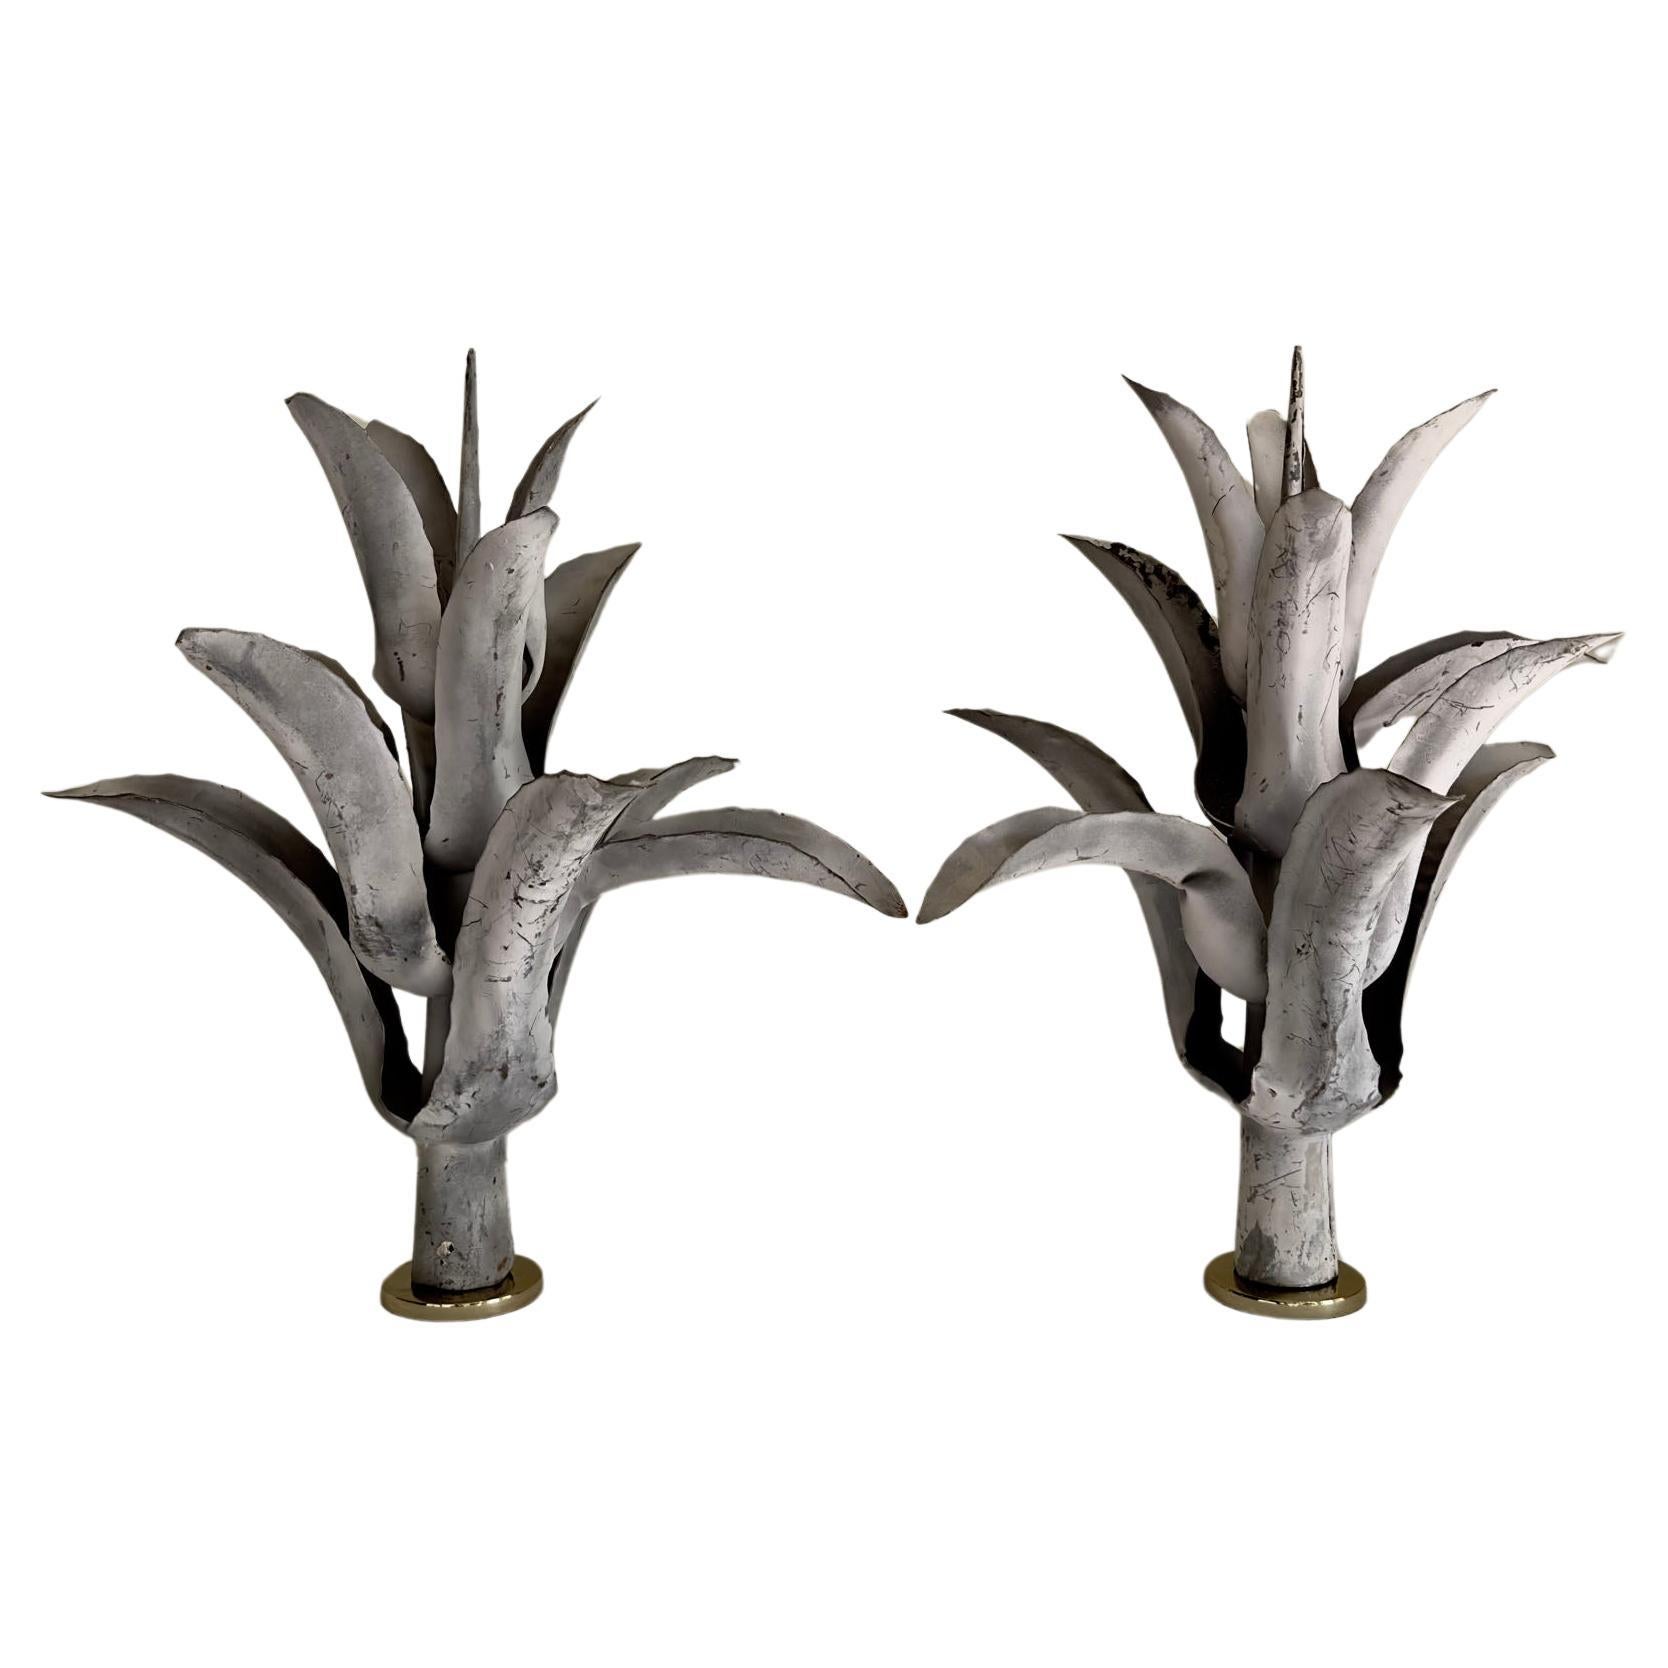 Pair French Zinc Agave Plant Specimen Sculptures For Sale